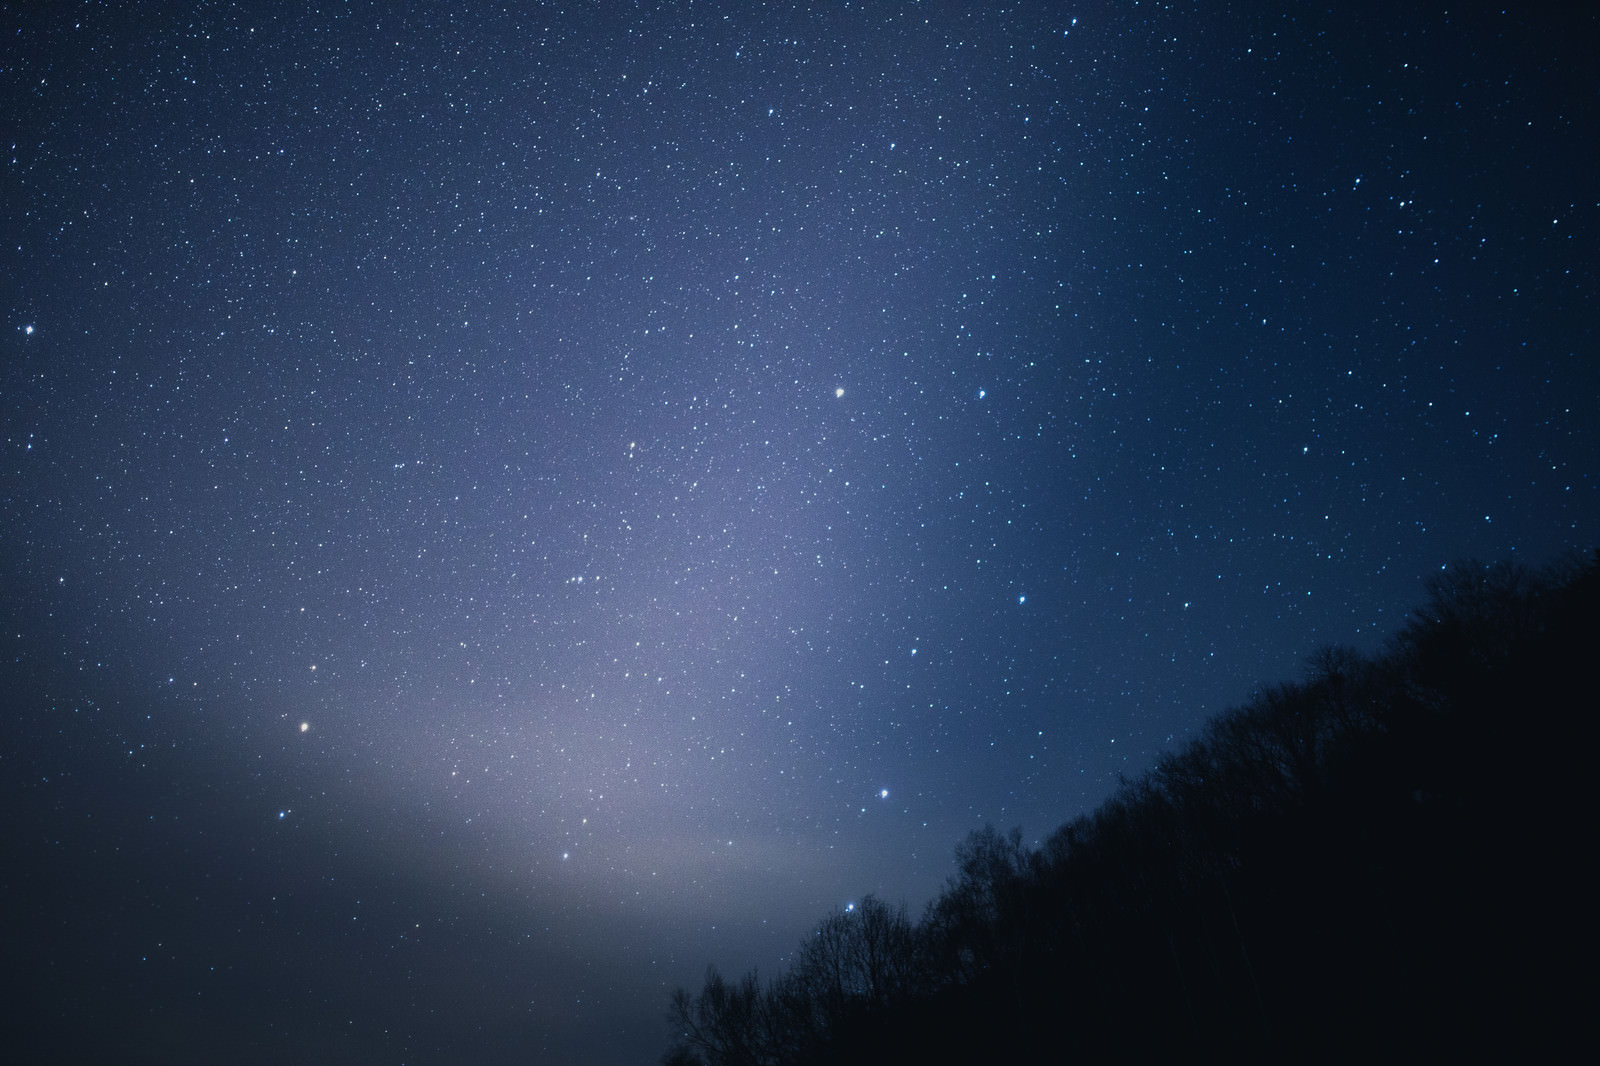 星がキレイな北アルプスの夜空の写真 画像 フリー素材 ぱくたそ